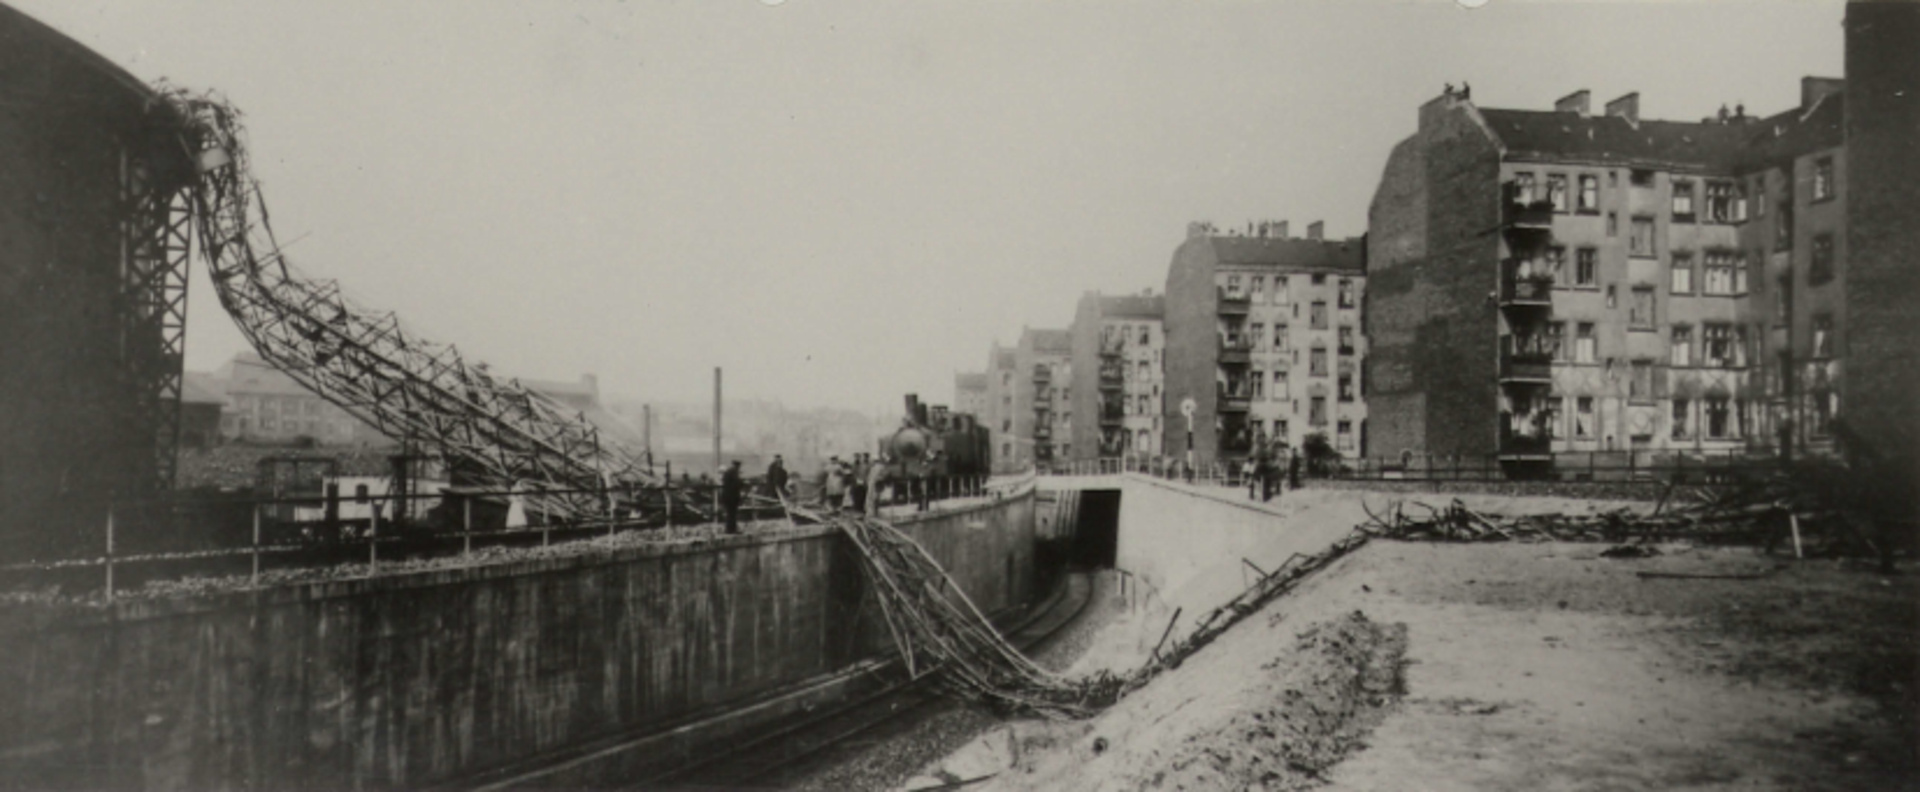 ICGA Gaswerk Schöneberg, Einsturz eines hohen Montagemastes, 1909